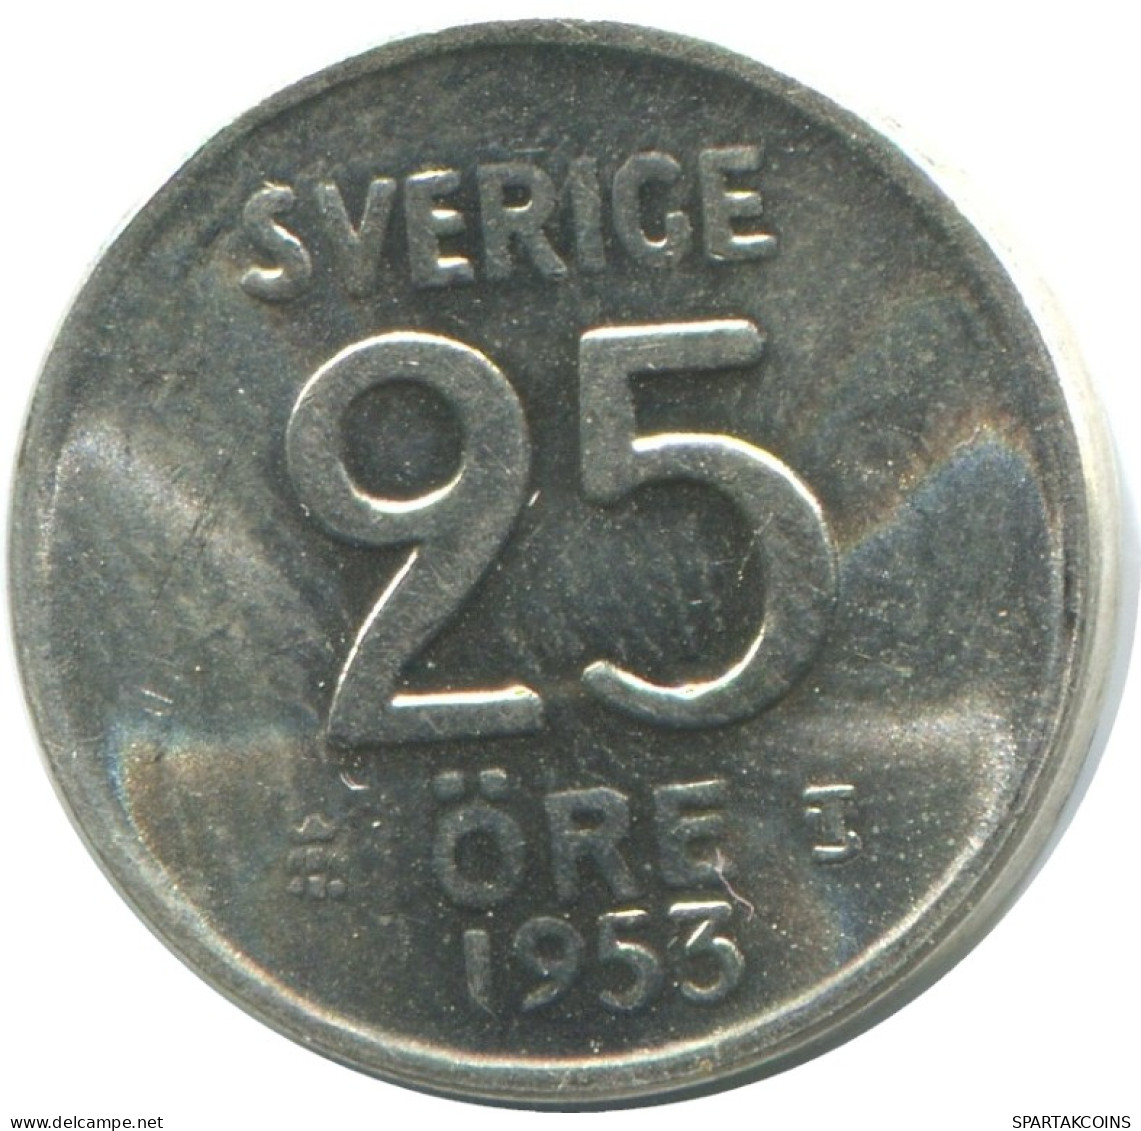 25 ORE 1953 SUECIA SWEDEN PLATA Moneda #AC502.2.E.A - Suède